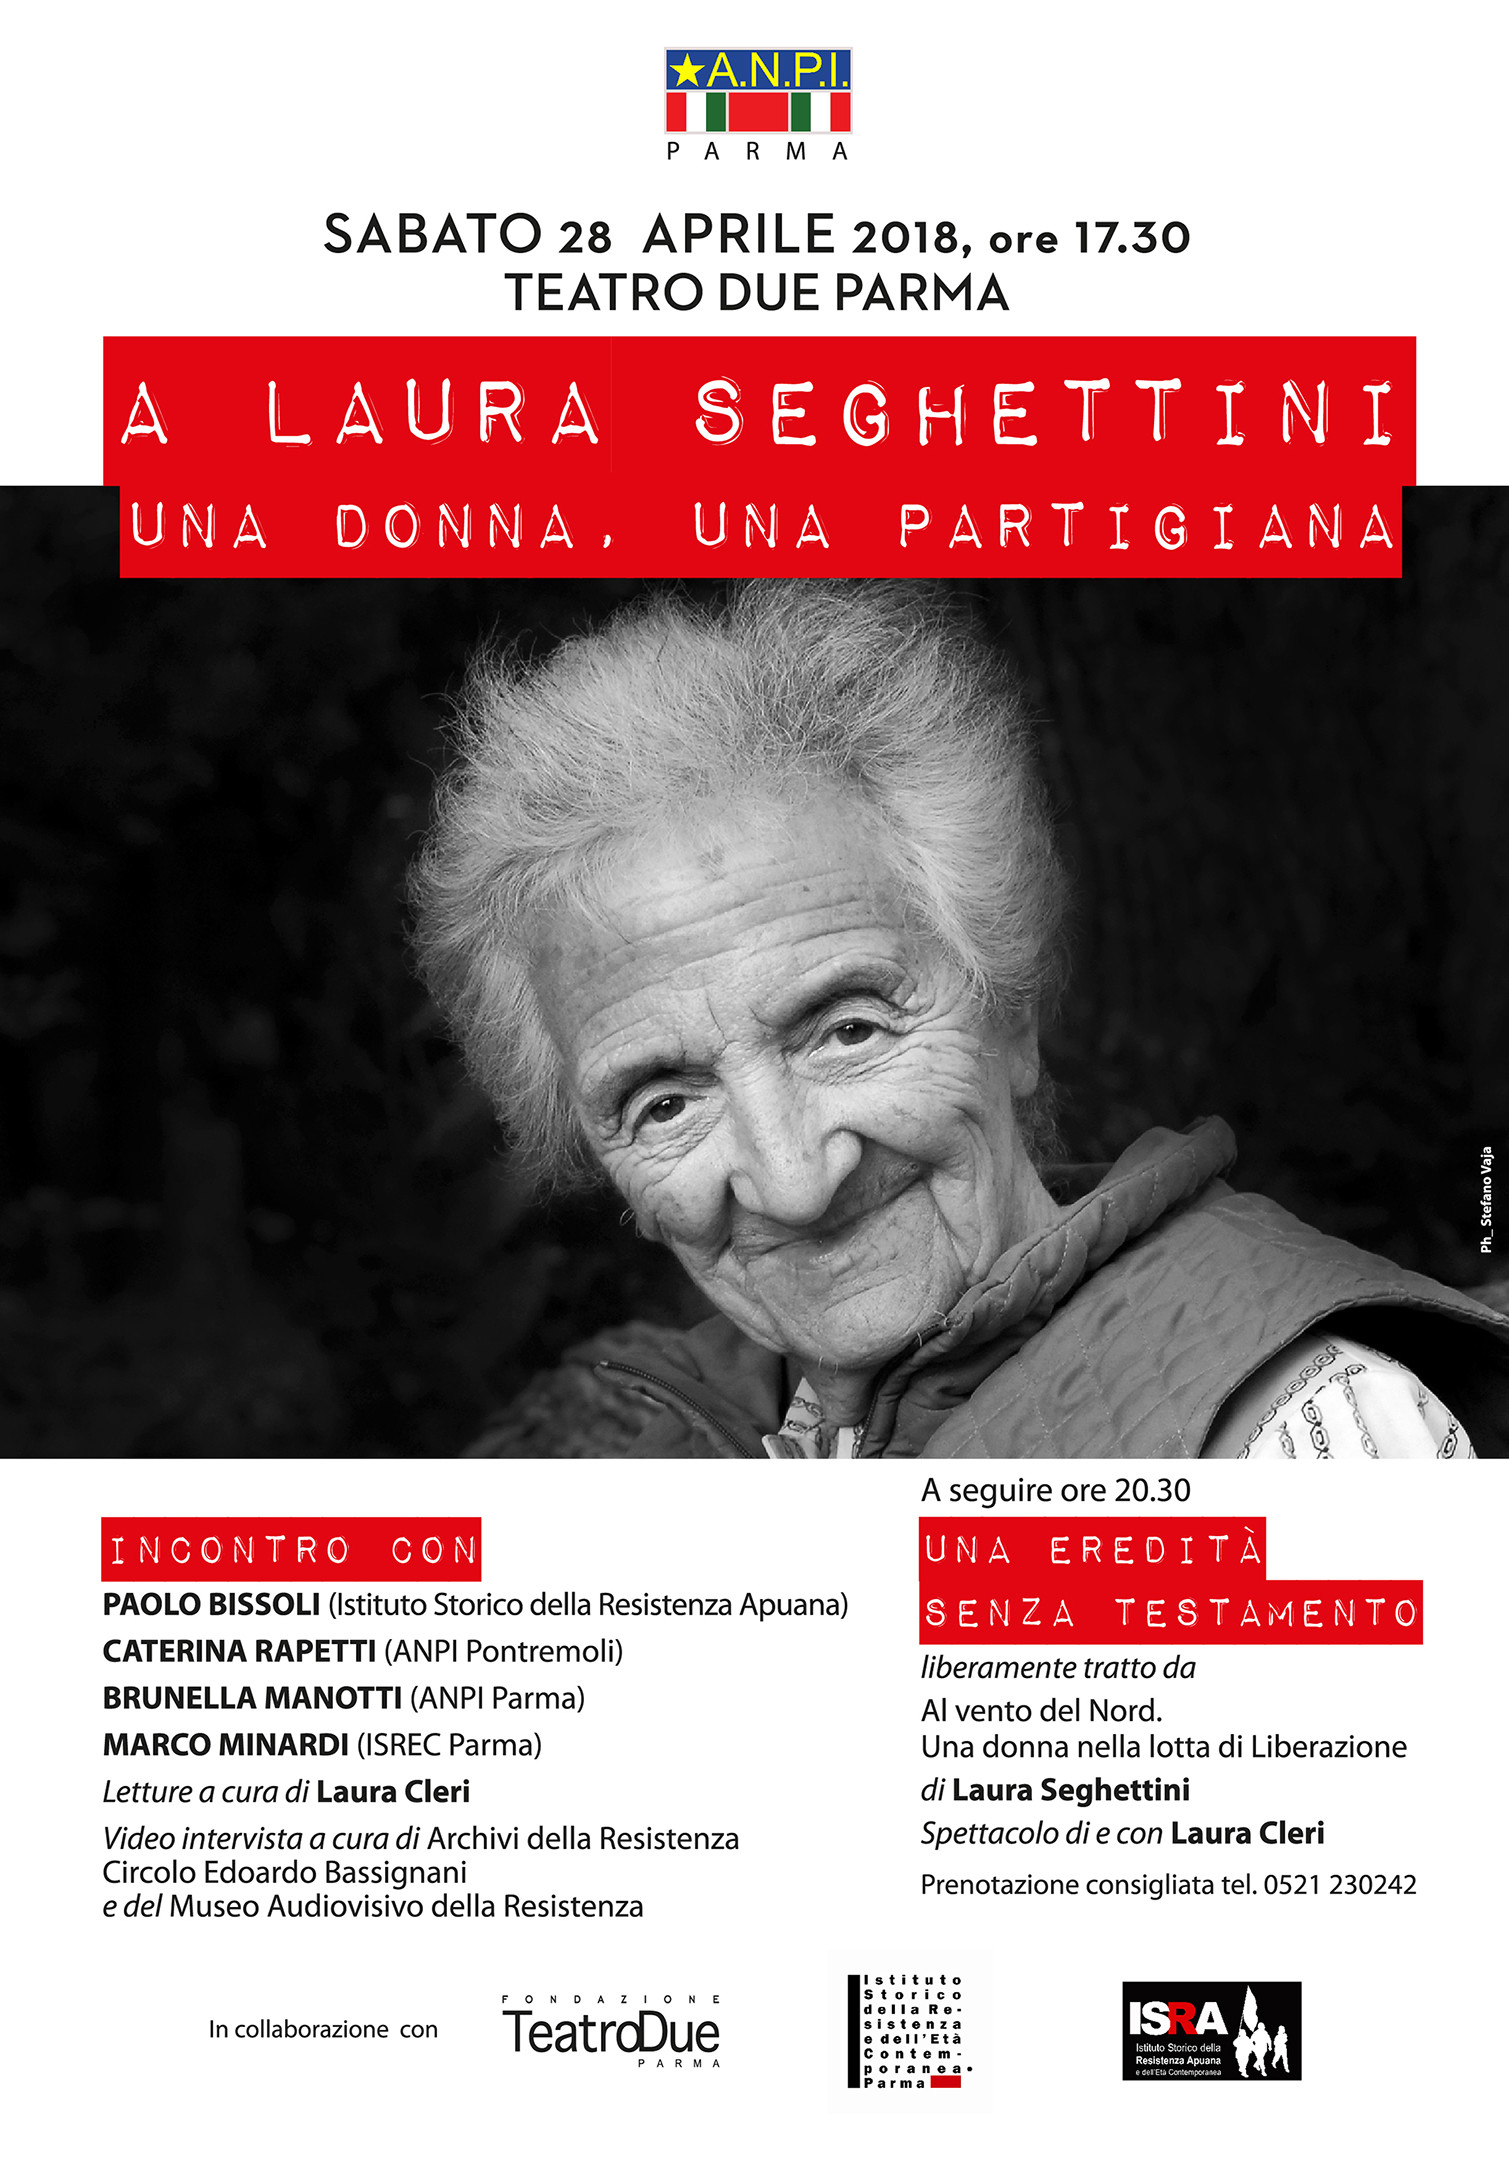 'Laura Seghettini, una donna, una partigiana'